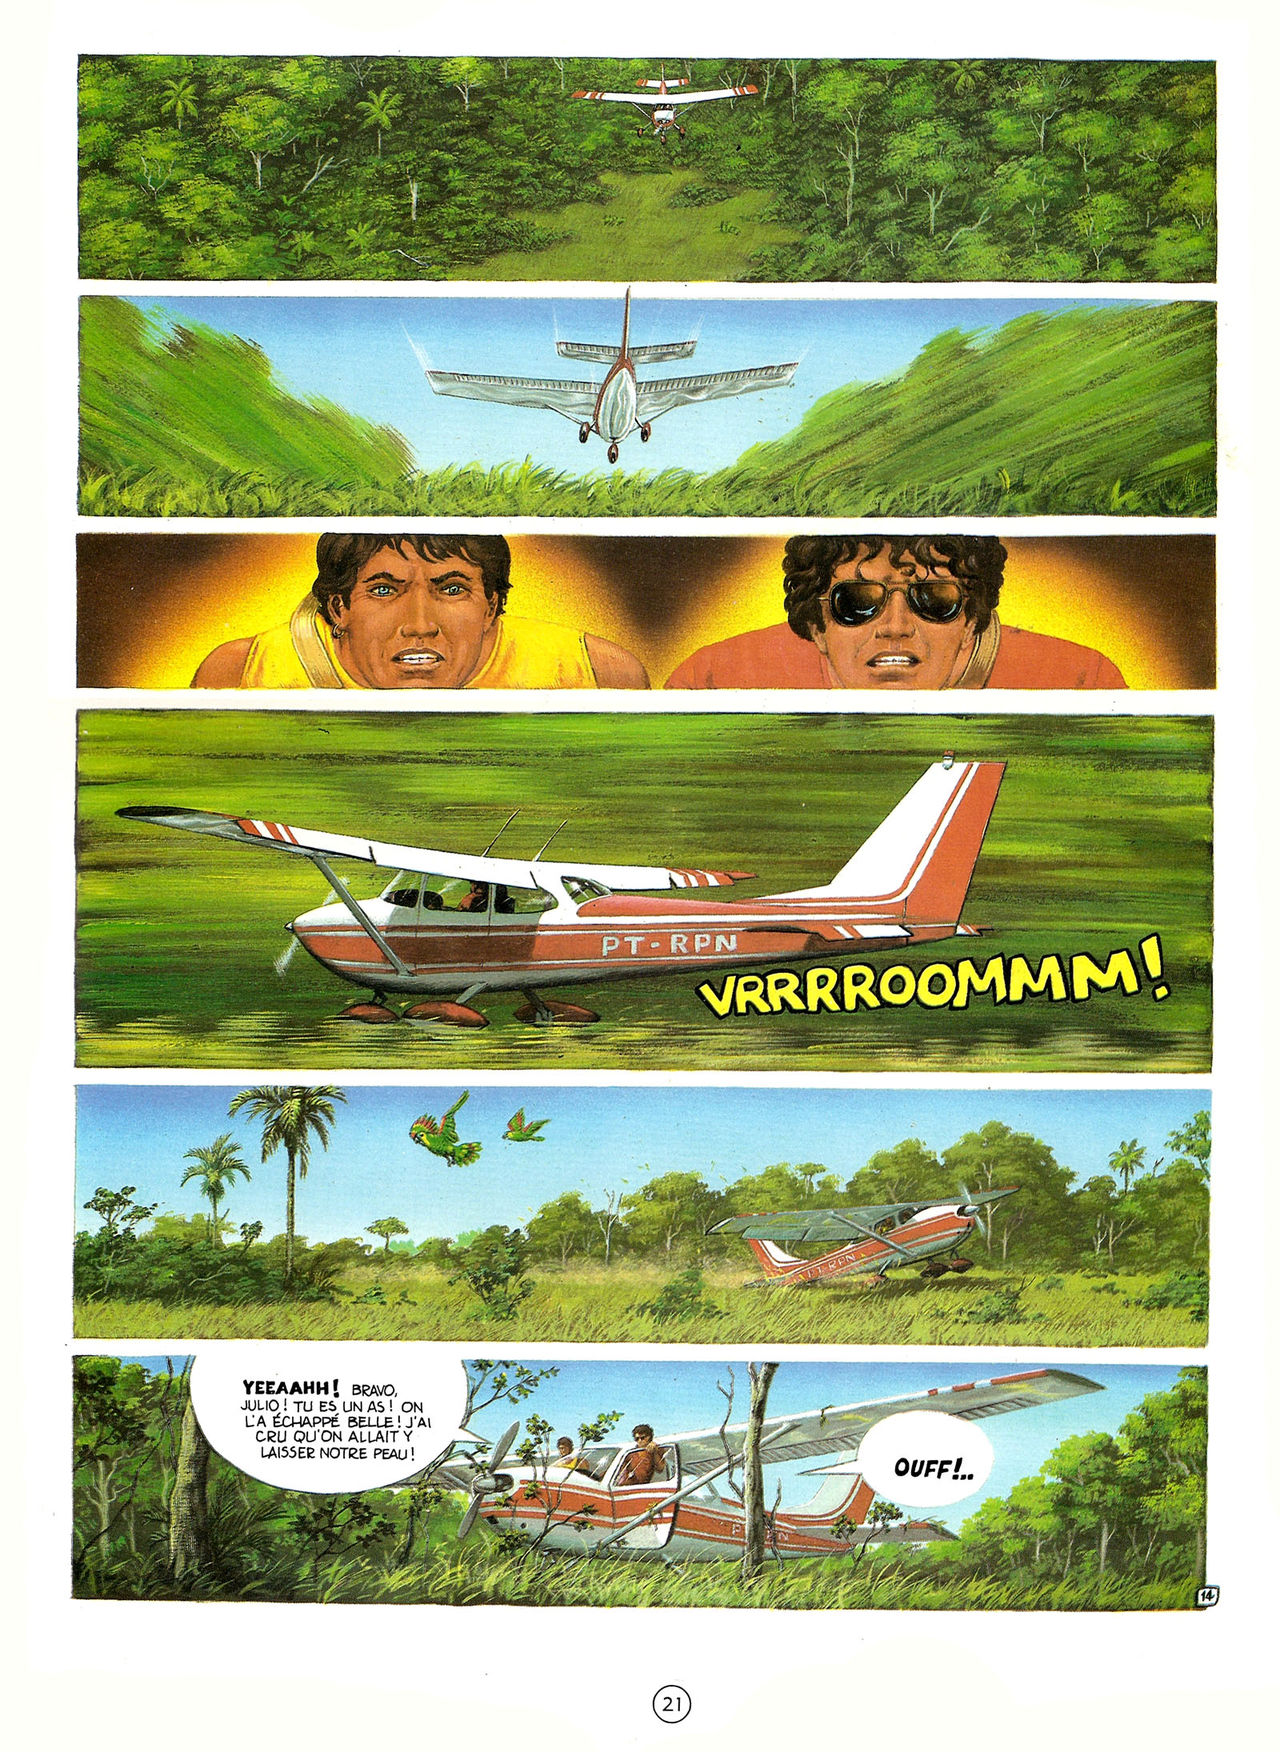 Les Aventures de Vic Voyage 05 - Brazil! numero d'image 21